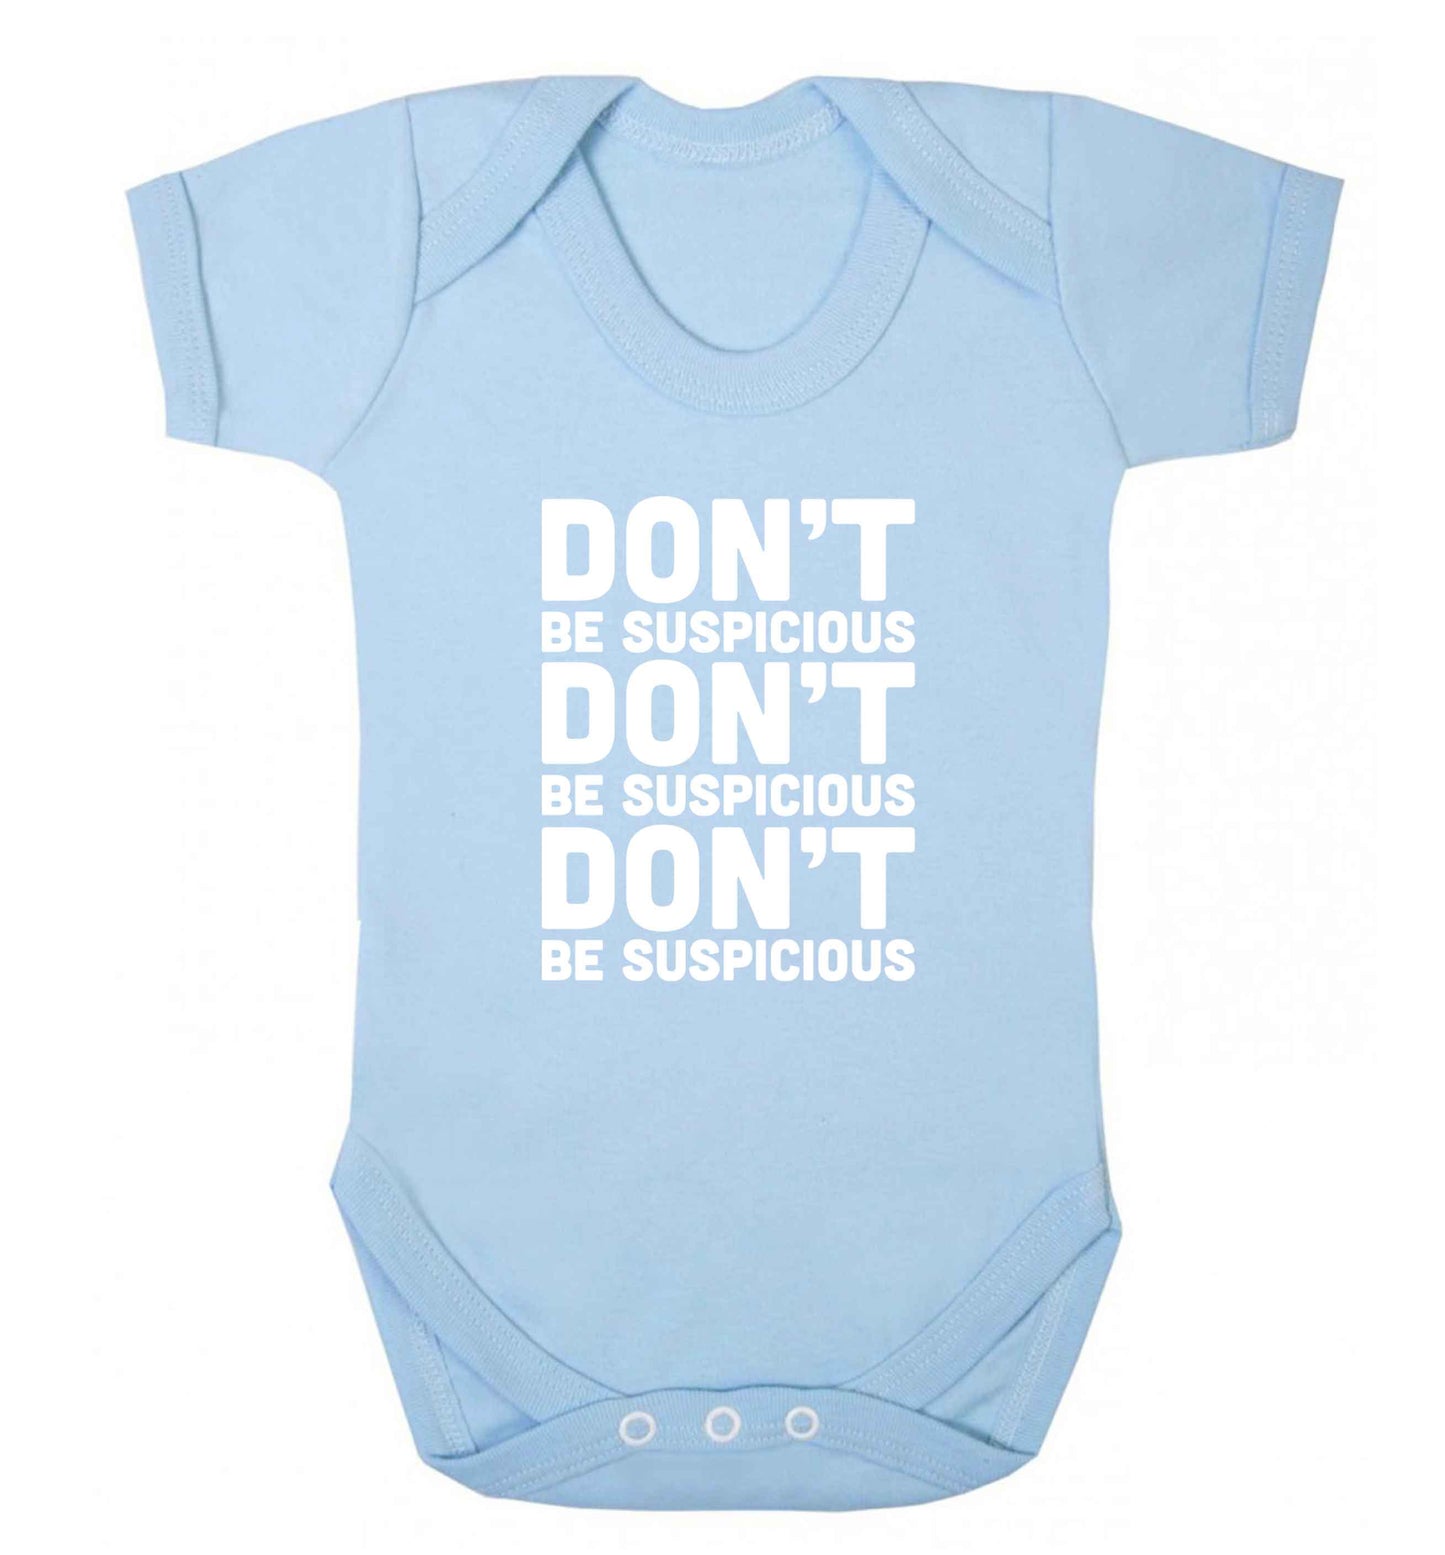 Gen Z funny viral meme  baby vest pale blue 18-24 months